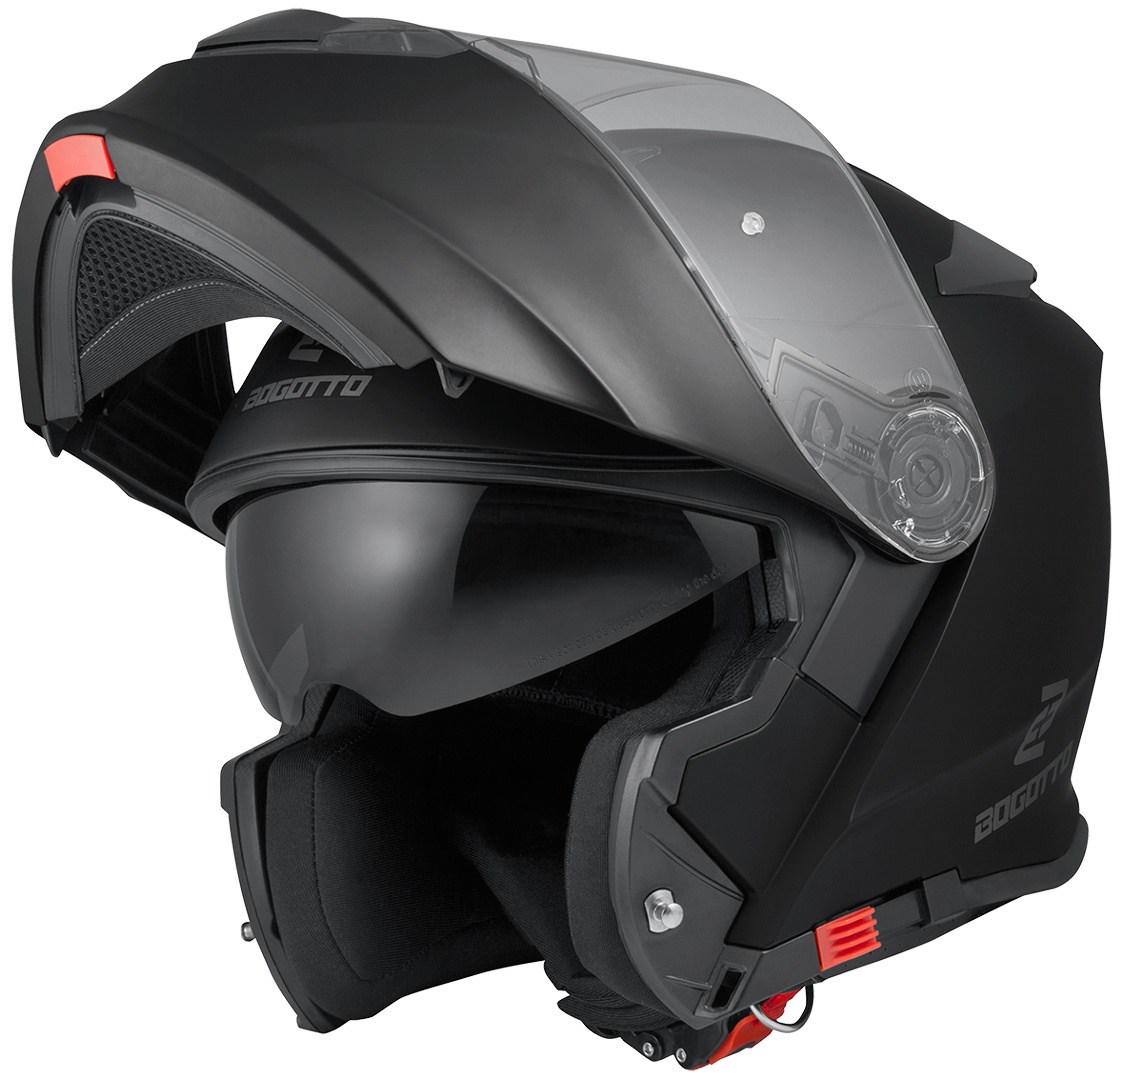 Мотоциклетный шлем Bogotto V271 с логотипом, черный мотоциклетный шлем мотоциклетный шлем матового черного цвета с солнцезащитным козырьком